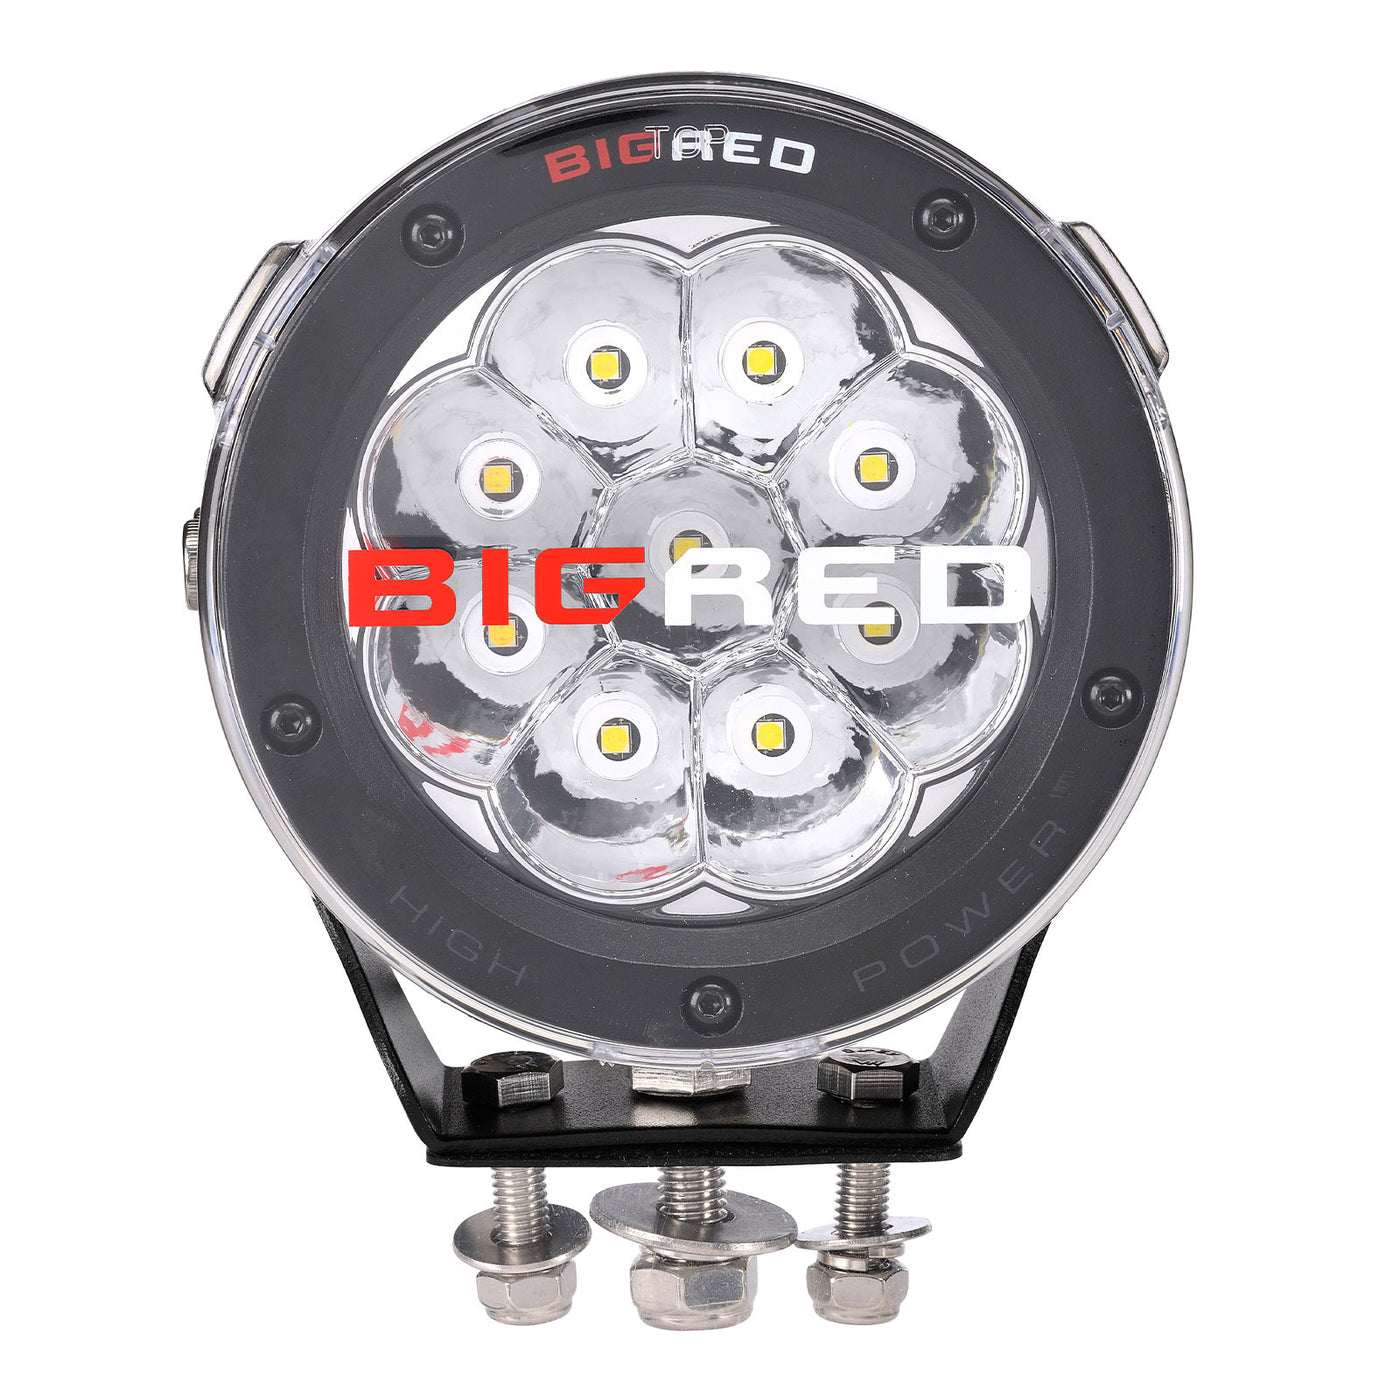 5" Inch BRG LED Driving Light